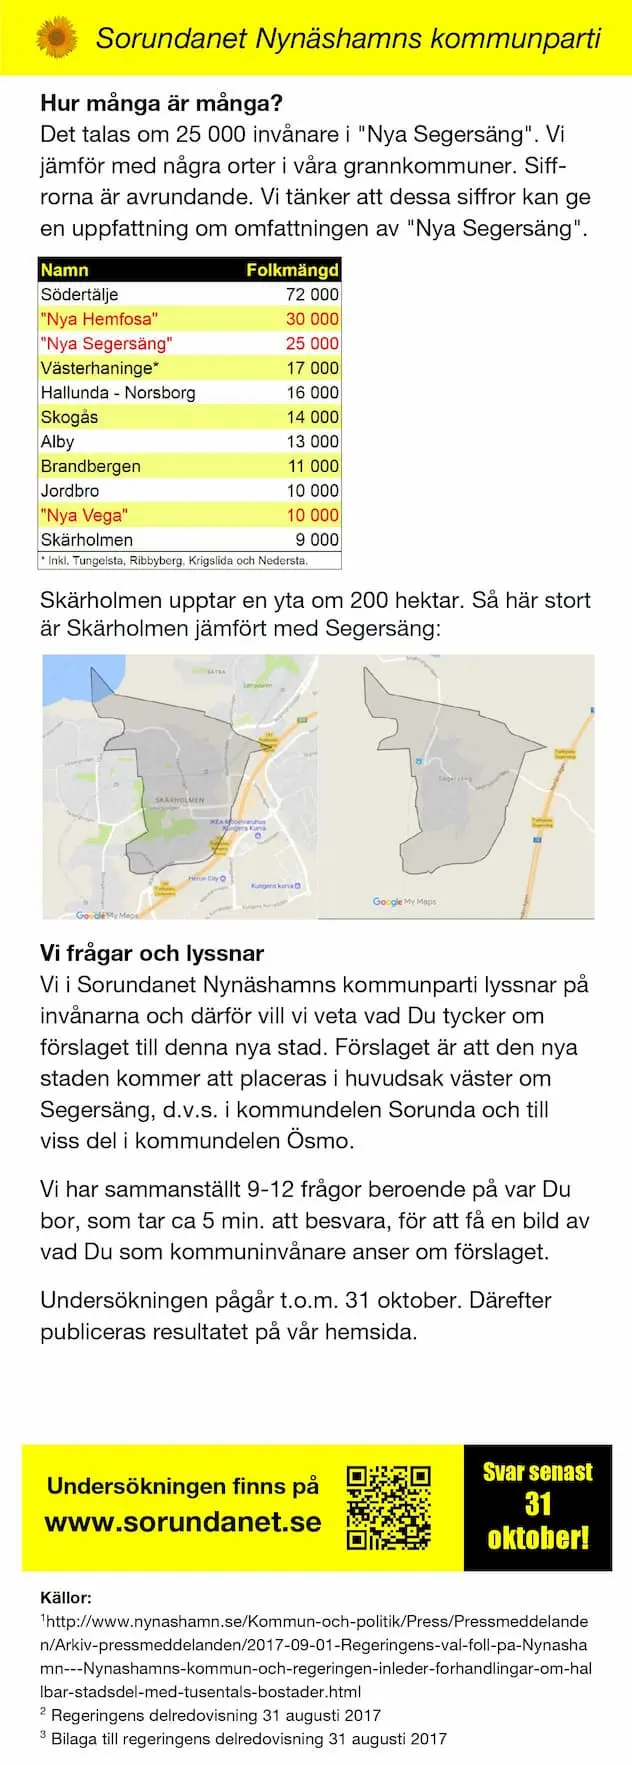 Vi frågar Dig om förslaget om ny stad i Segersäng! - Segersängsstaden - sida 2